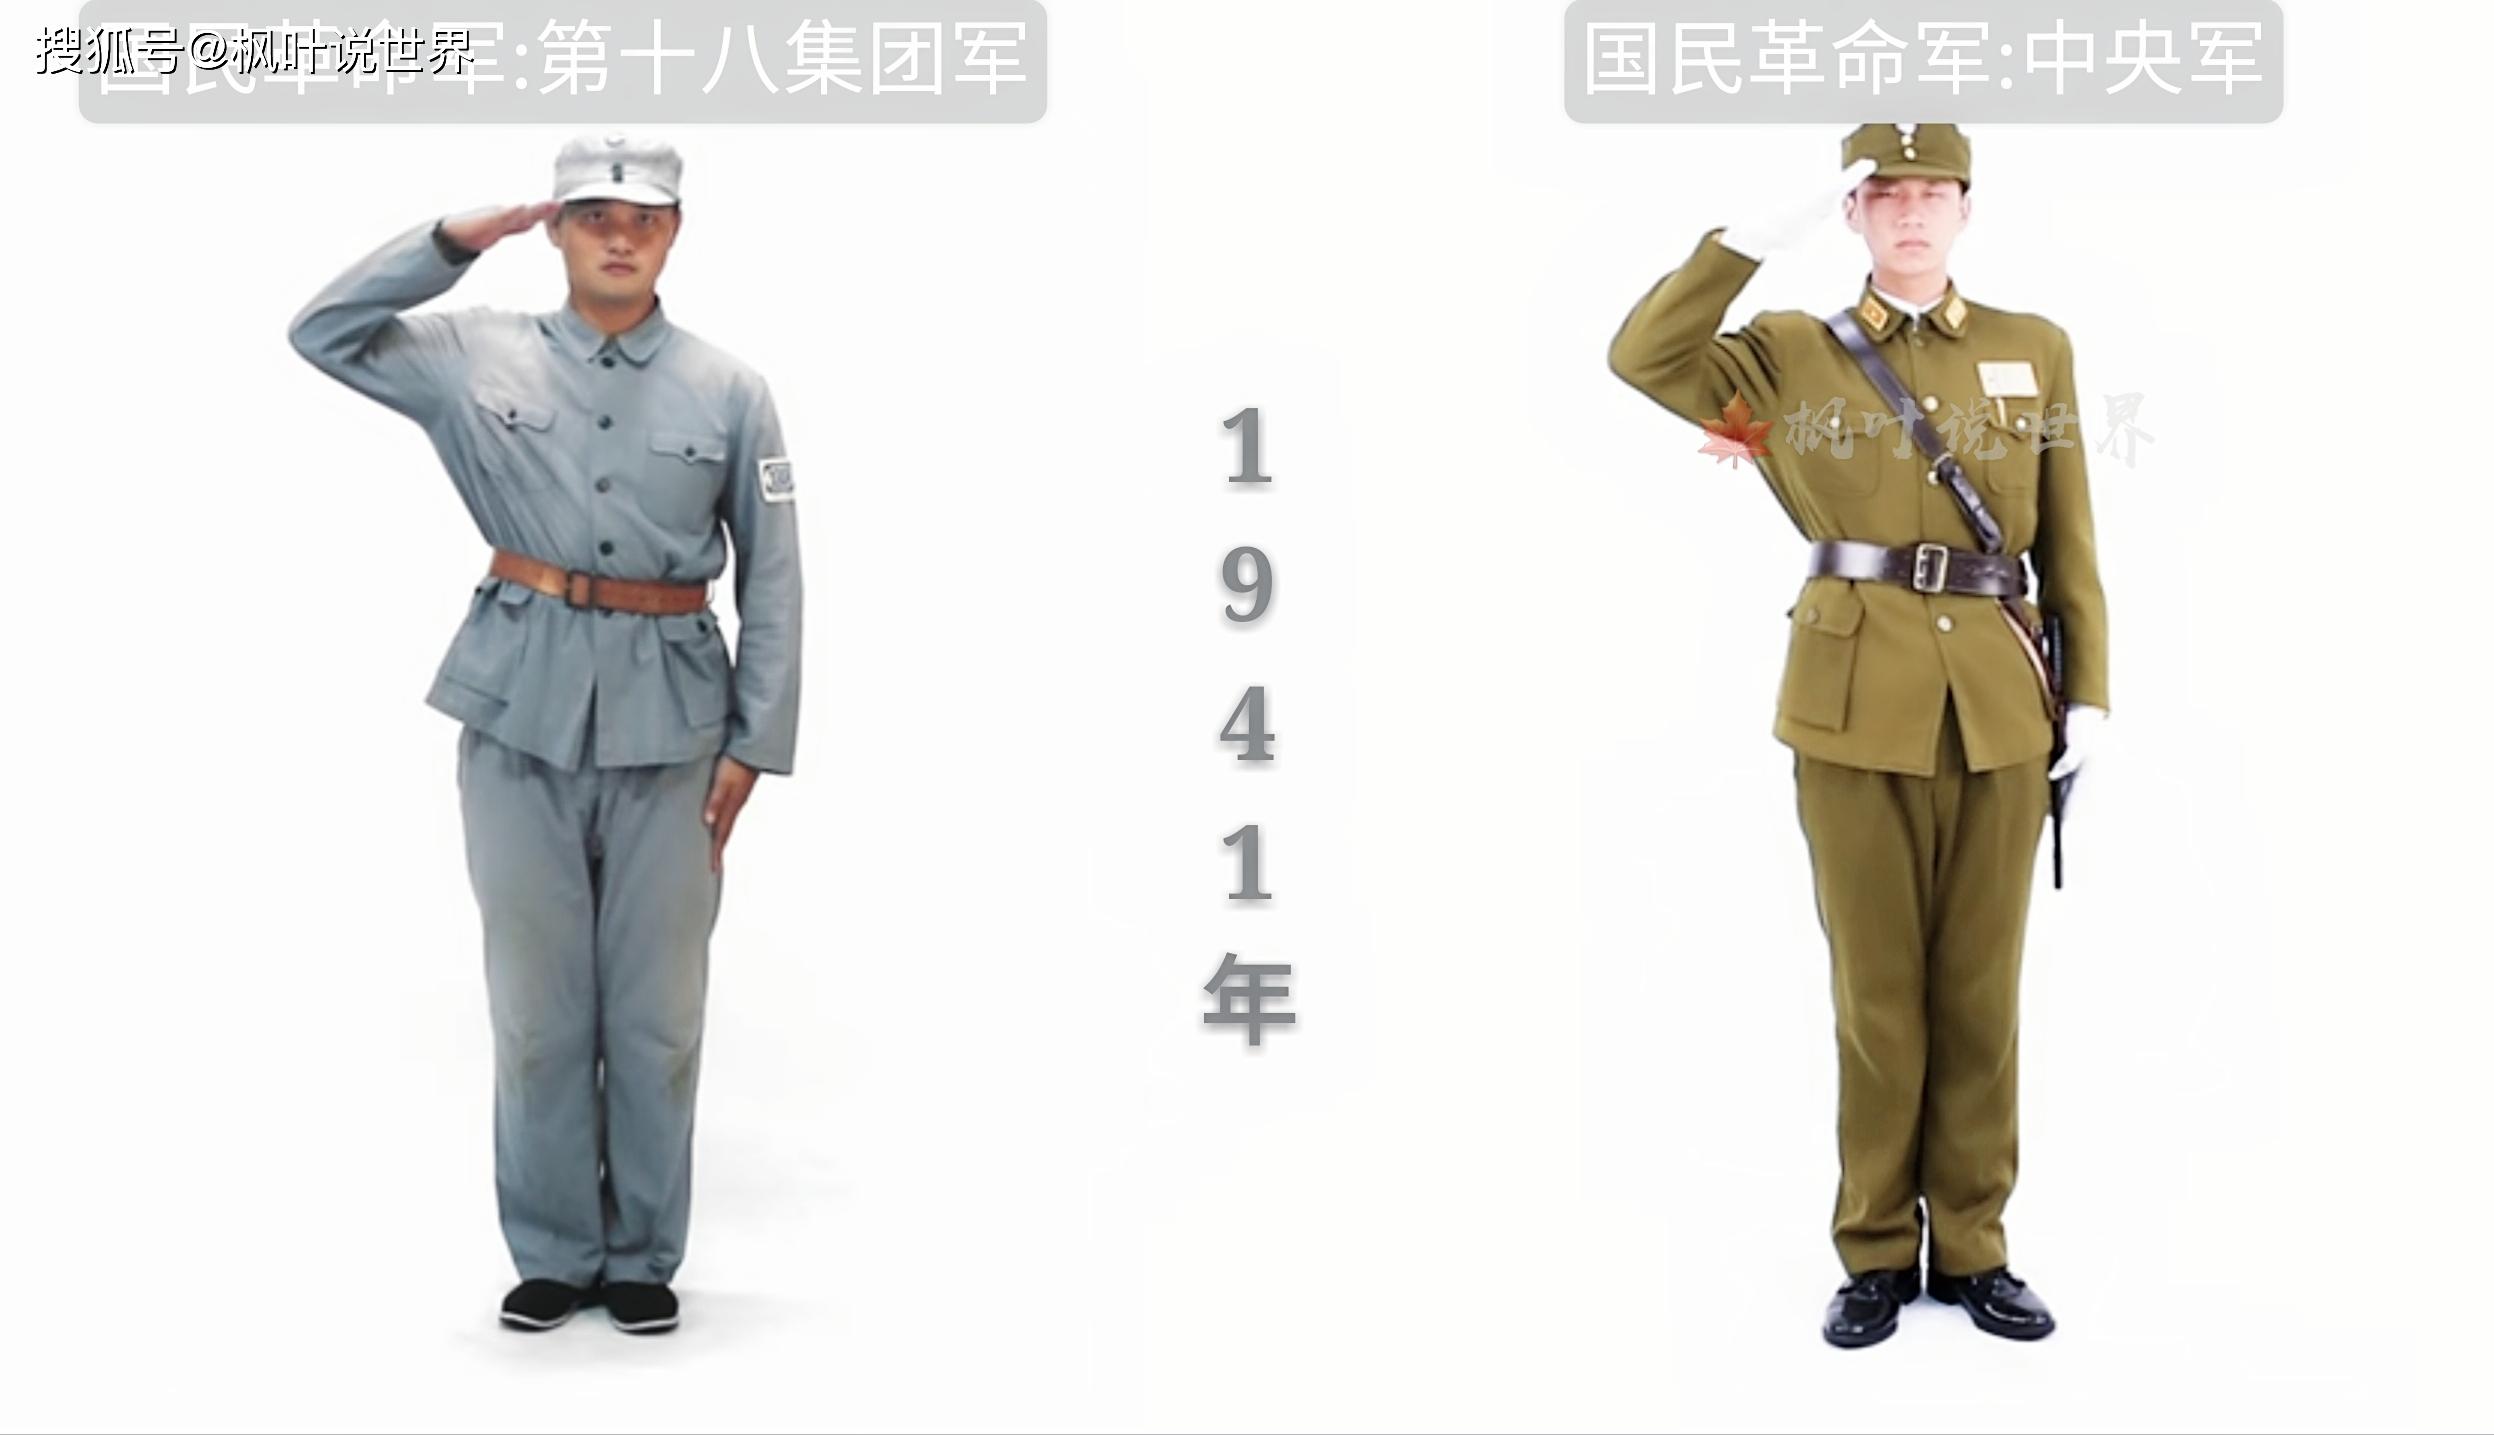 1912年武昌起义时期 中国近代陆军军服 1921年护法战争时期 中国近代